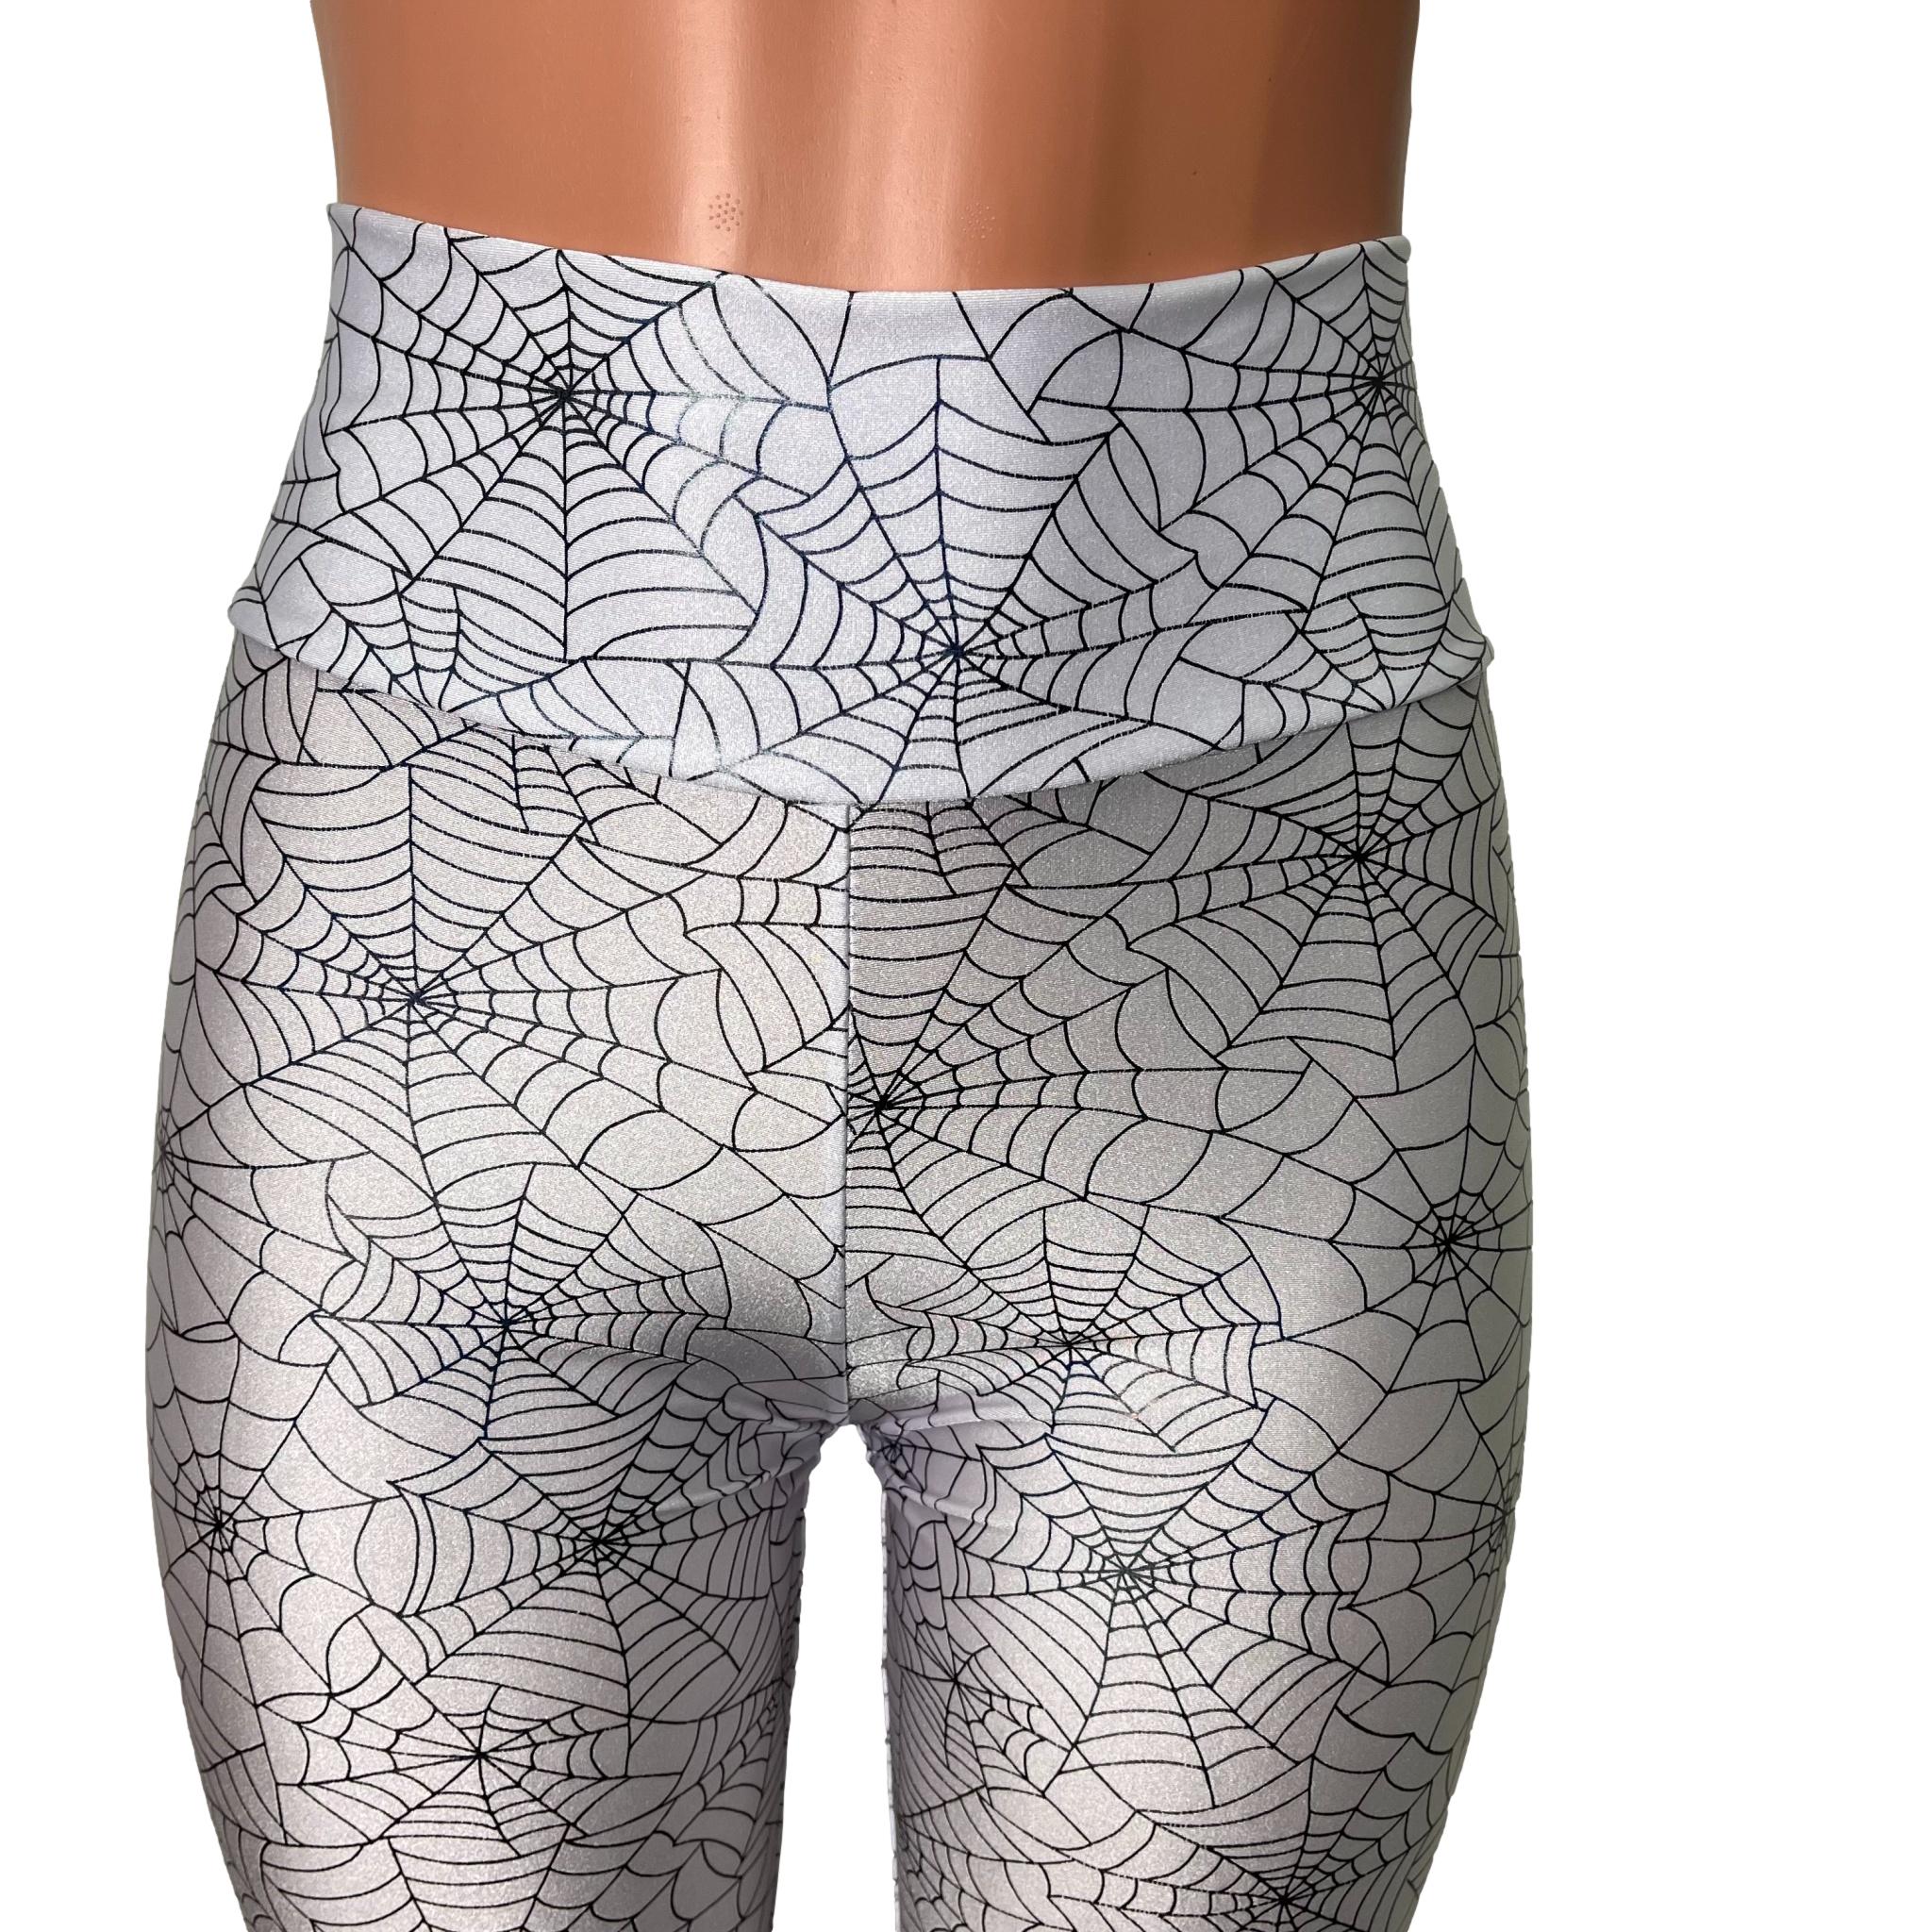 Women's Black & White Spider Web Allover-Print Legging